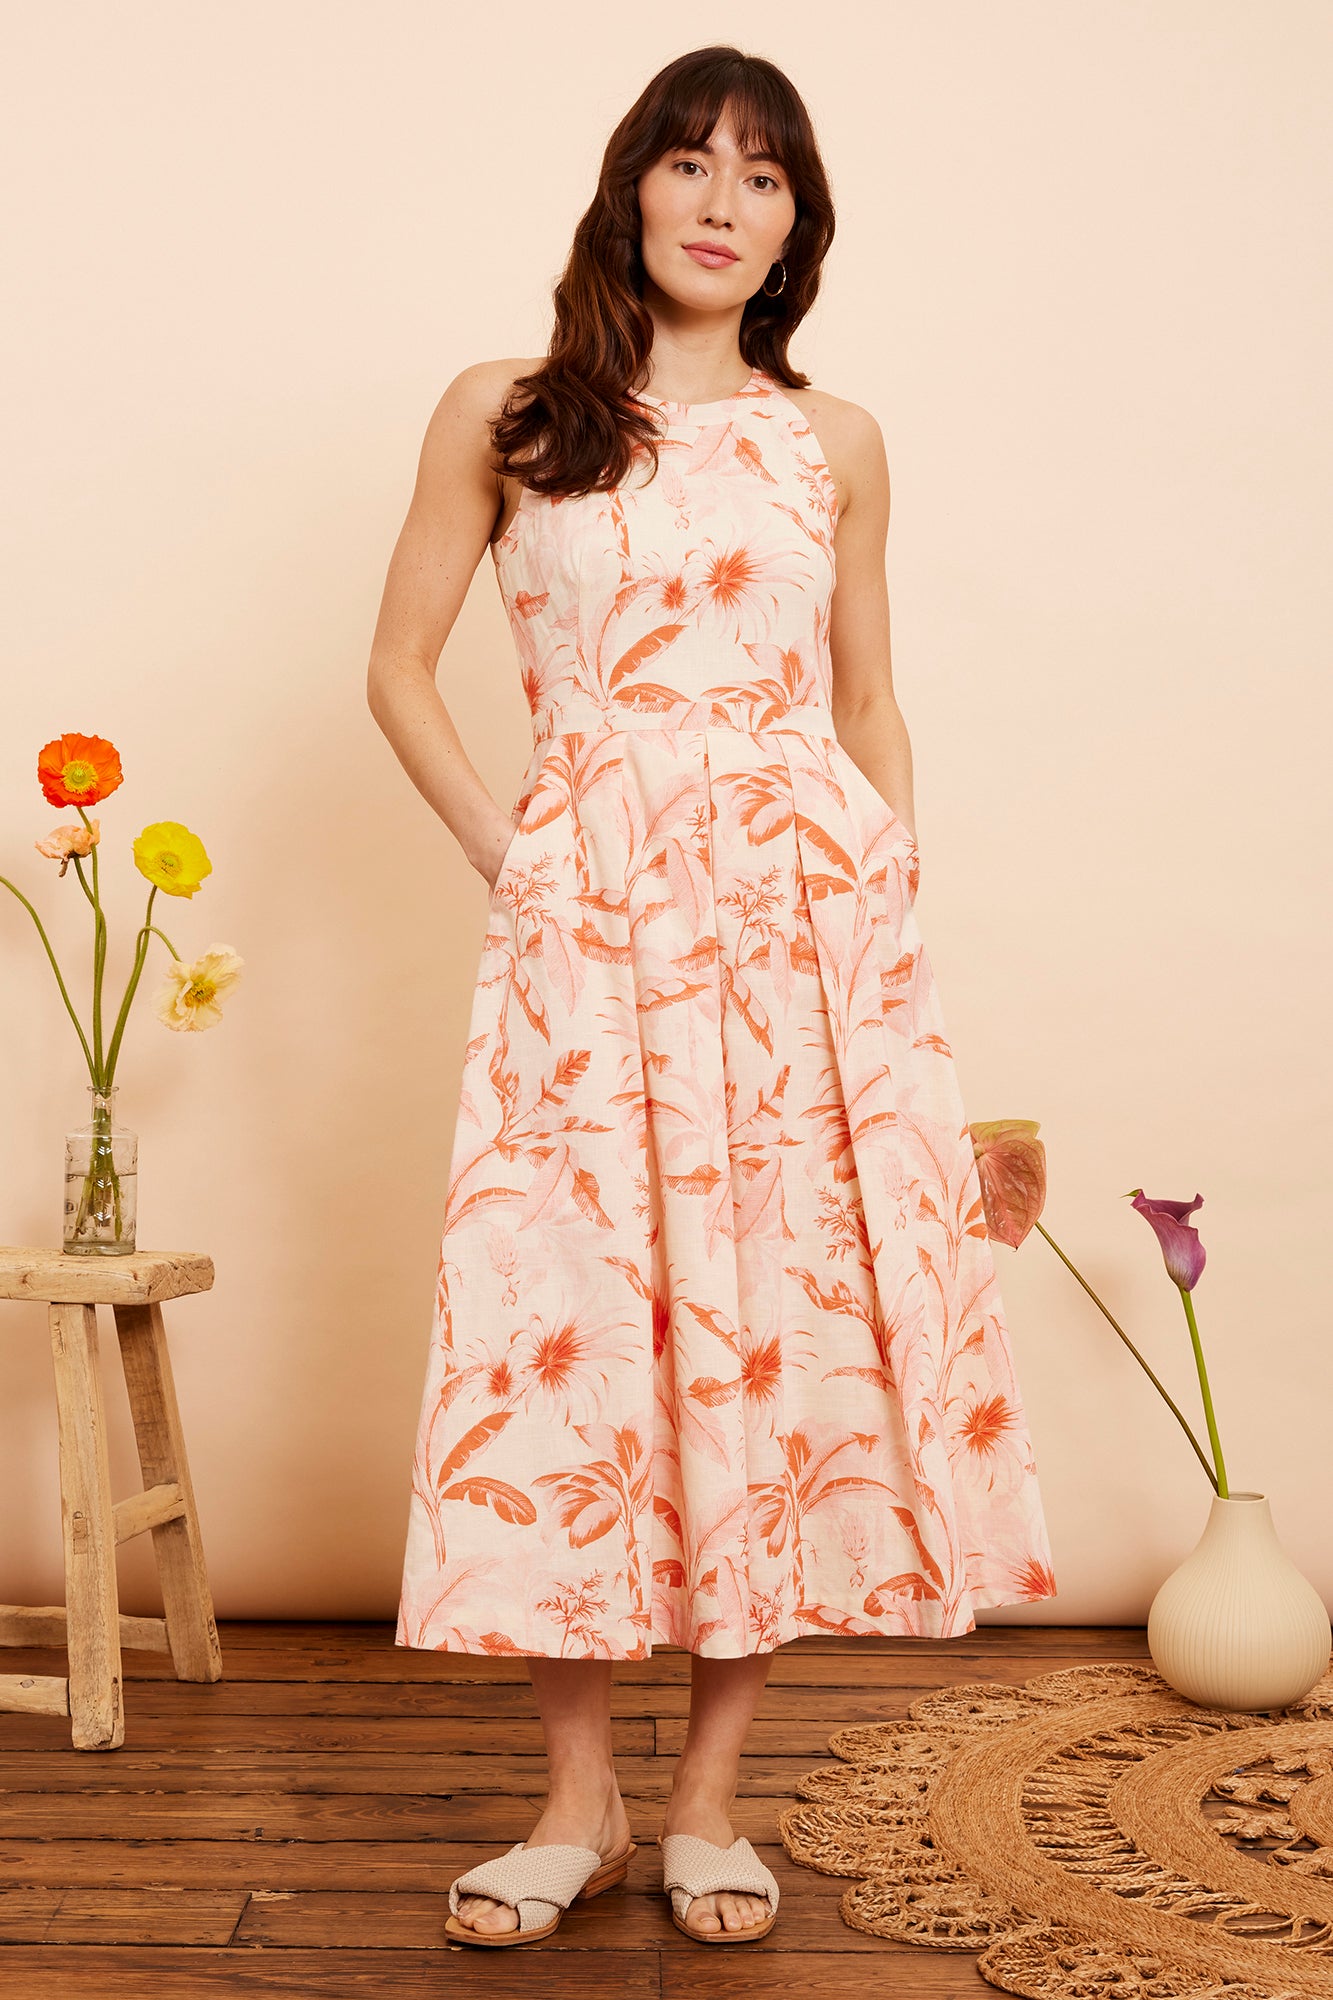 Floral Edit, Buy Floral Dresses